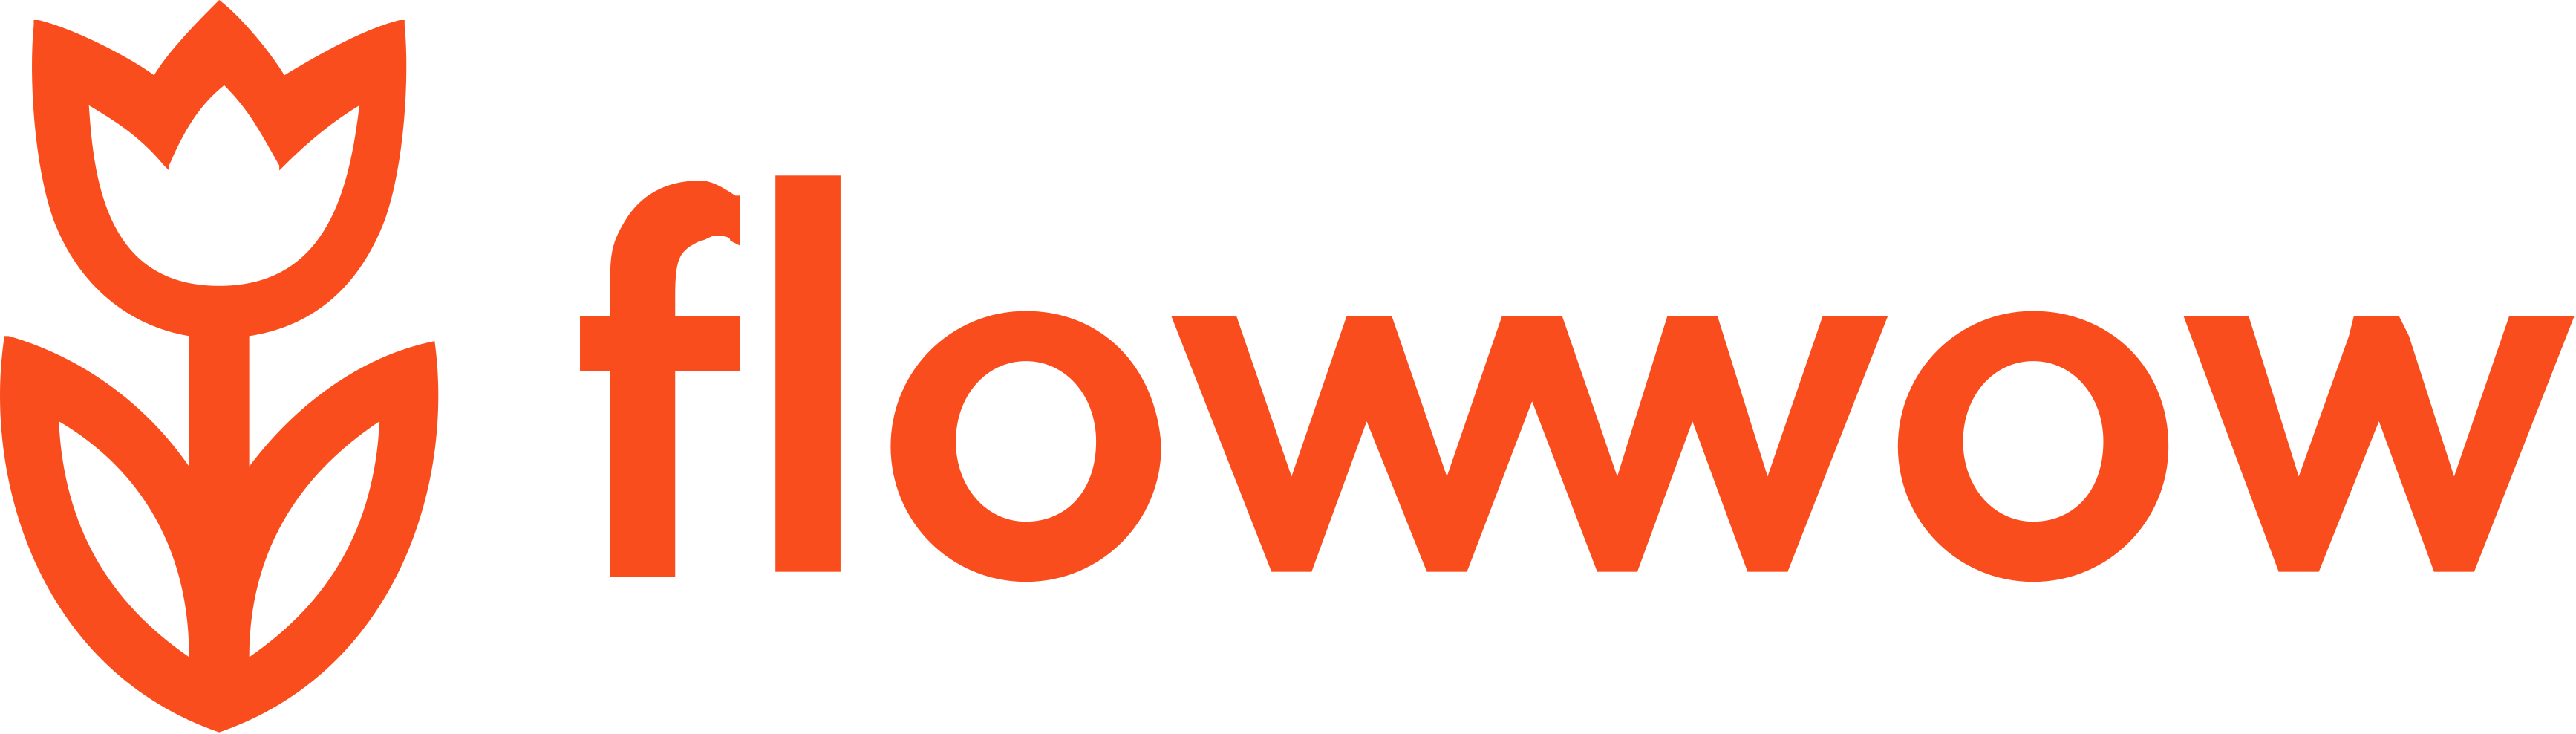 Фловов. Flowwow. Значок Flowwow. ФЛАУ вау. ФЛАУВАУ логотип.